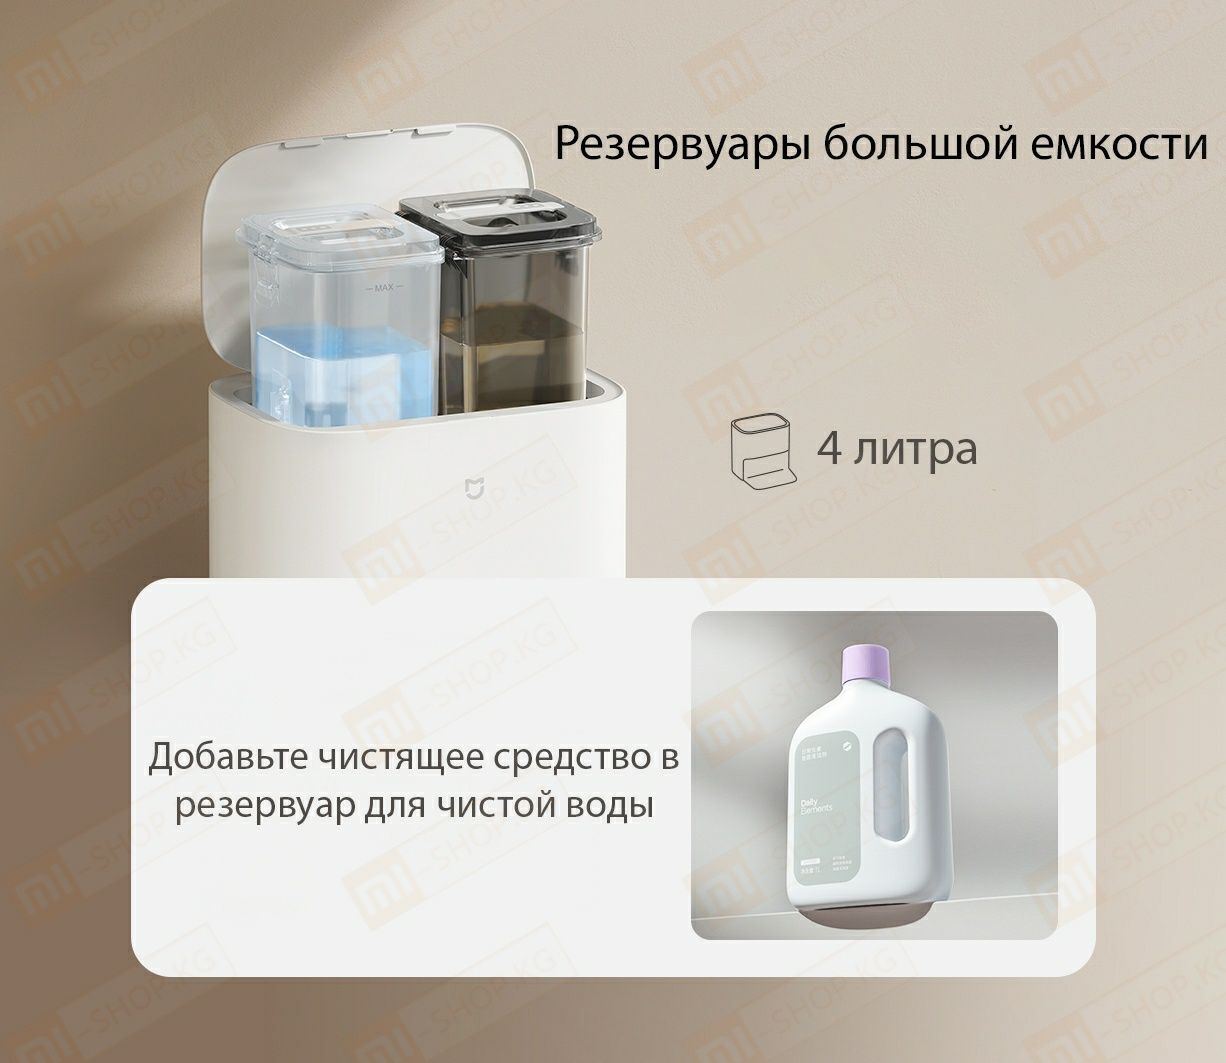 Робот-пылесос с базой для самоочистки Xiaomi Mijia Cleansing and Moppi